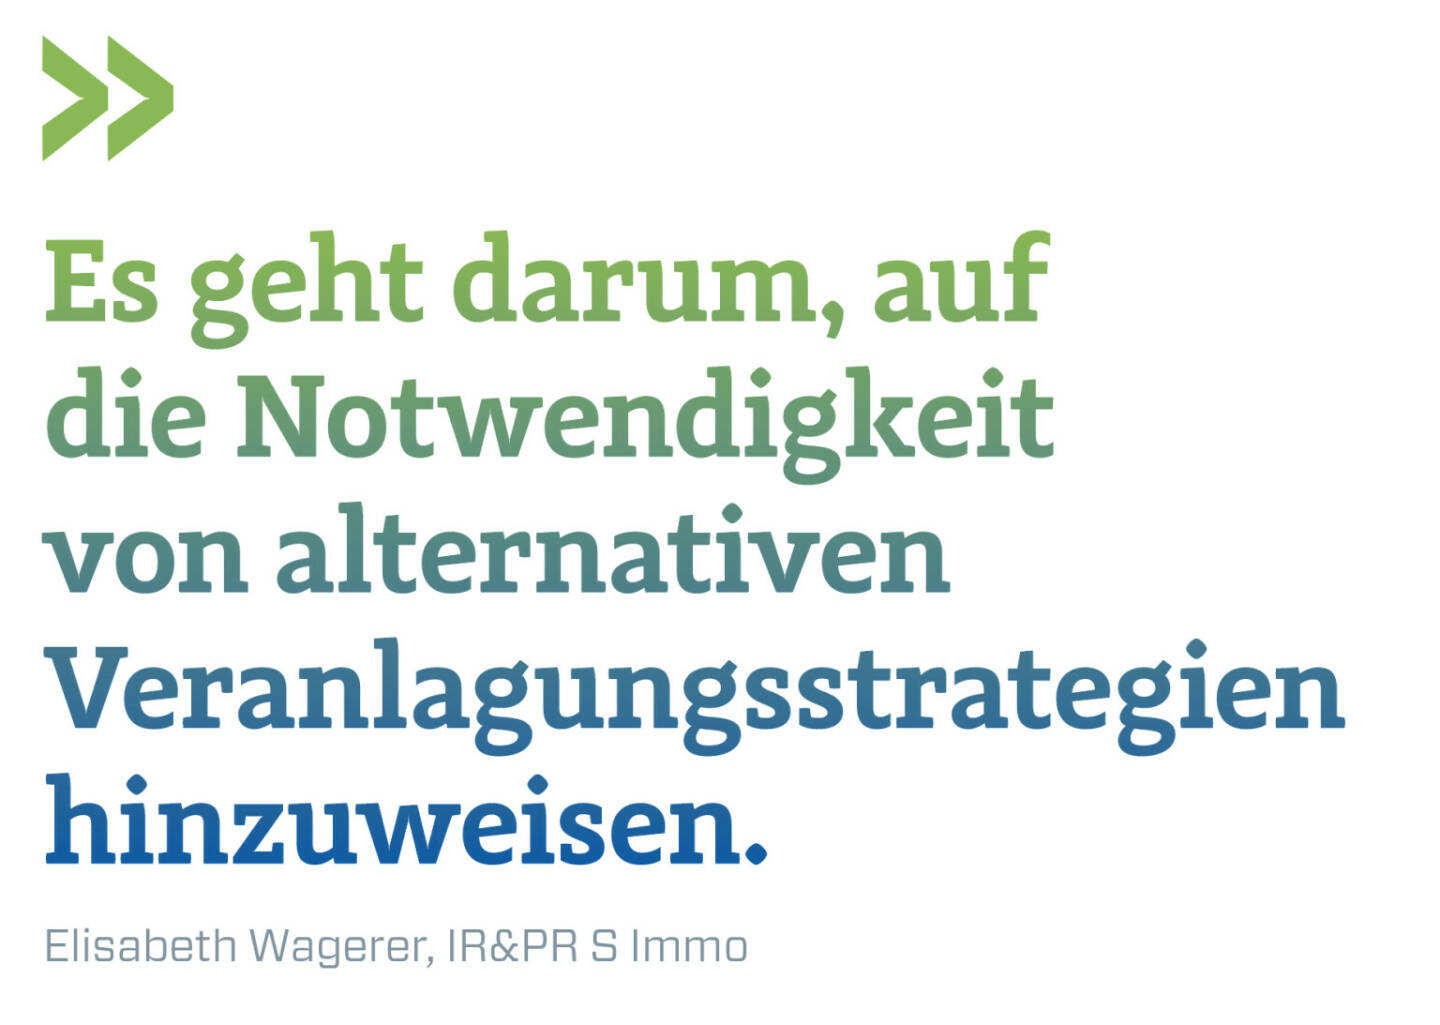 Es geht darum, auf die Notwendigkeit von alternativen Veranlagungsstrategien hinzuweisen.
Elisabeth Wagerer, IR&PR S Immo  